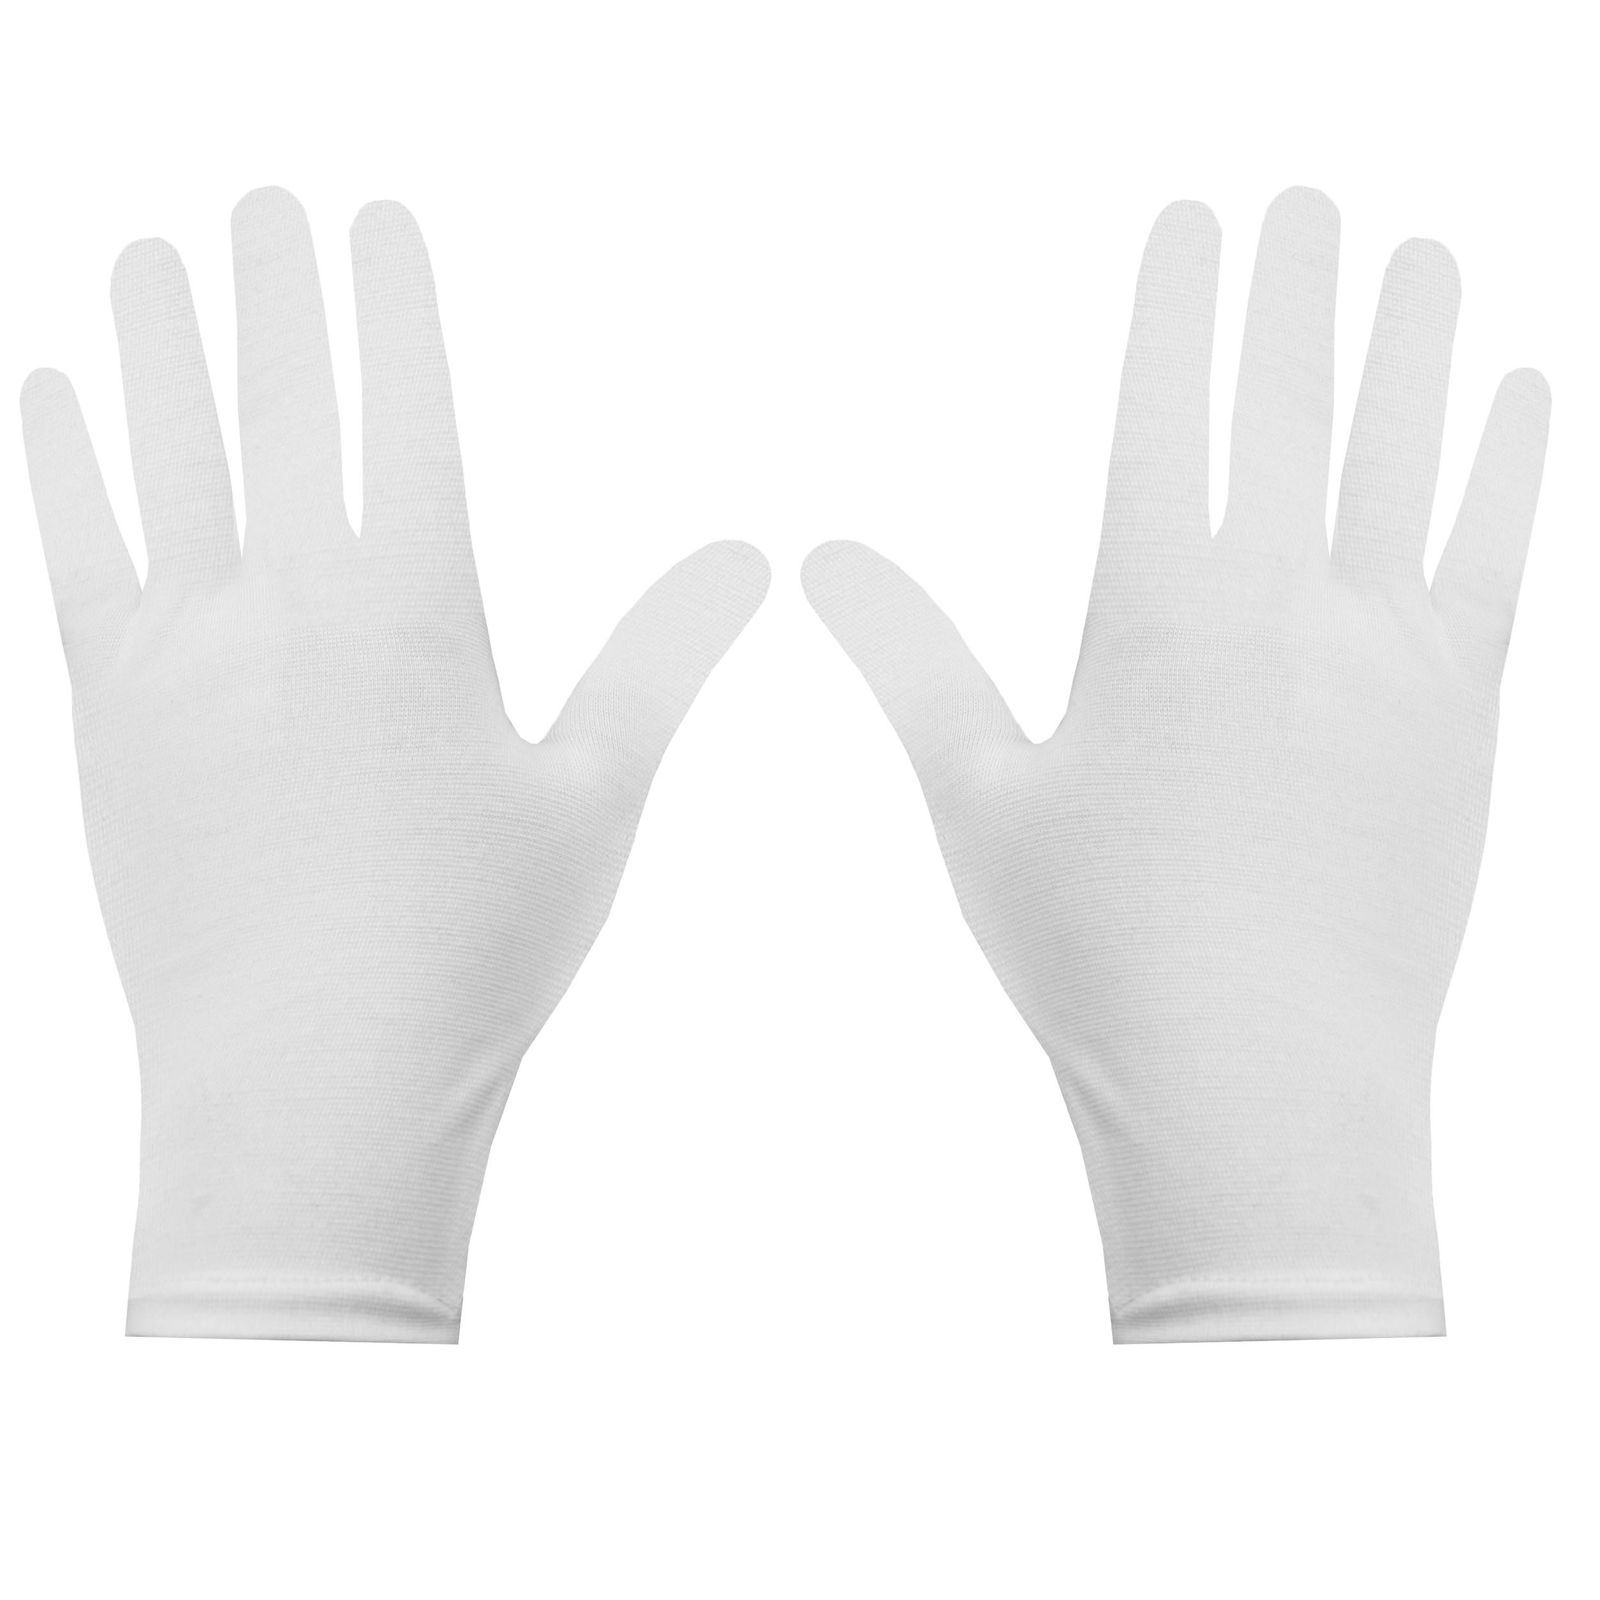 دستکش زنانه کد 5236 -  - 1